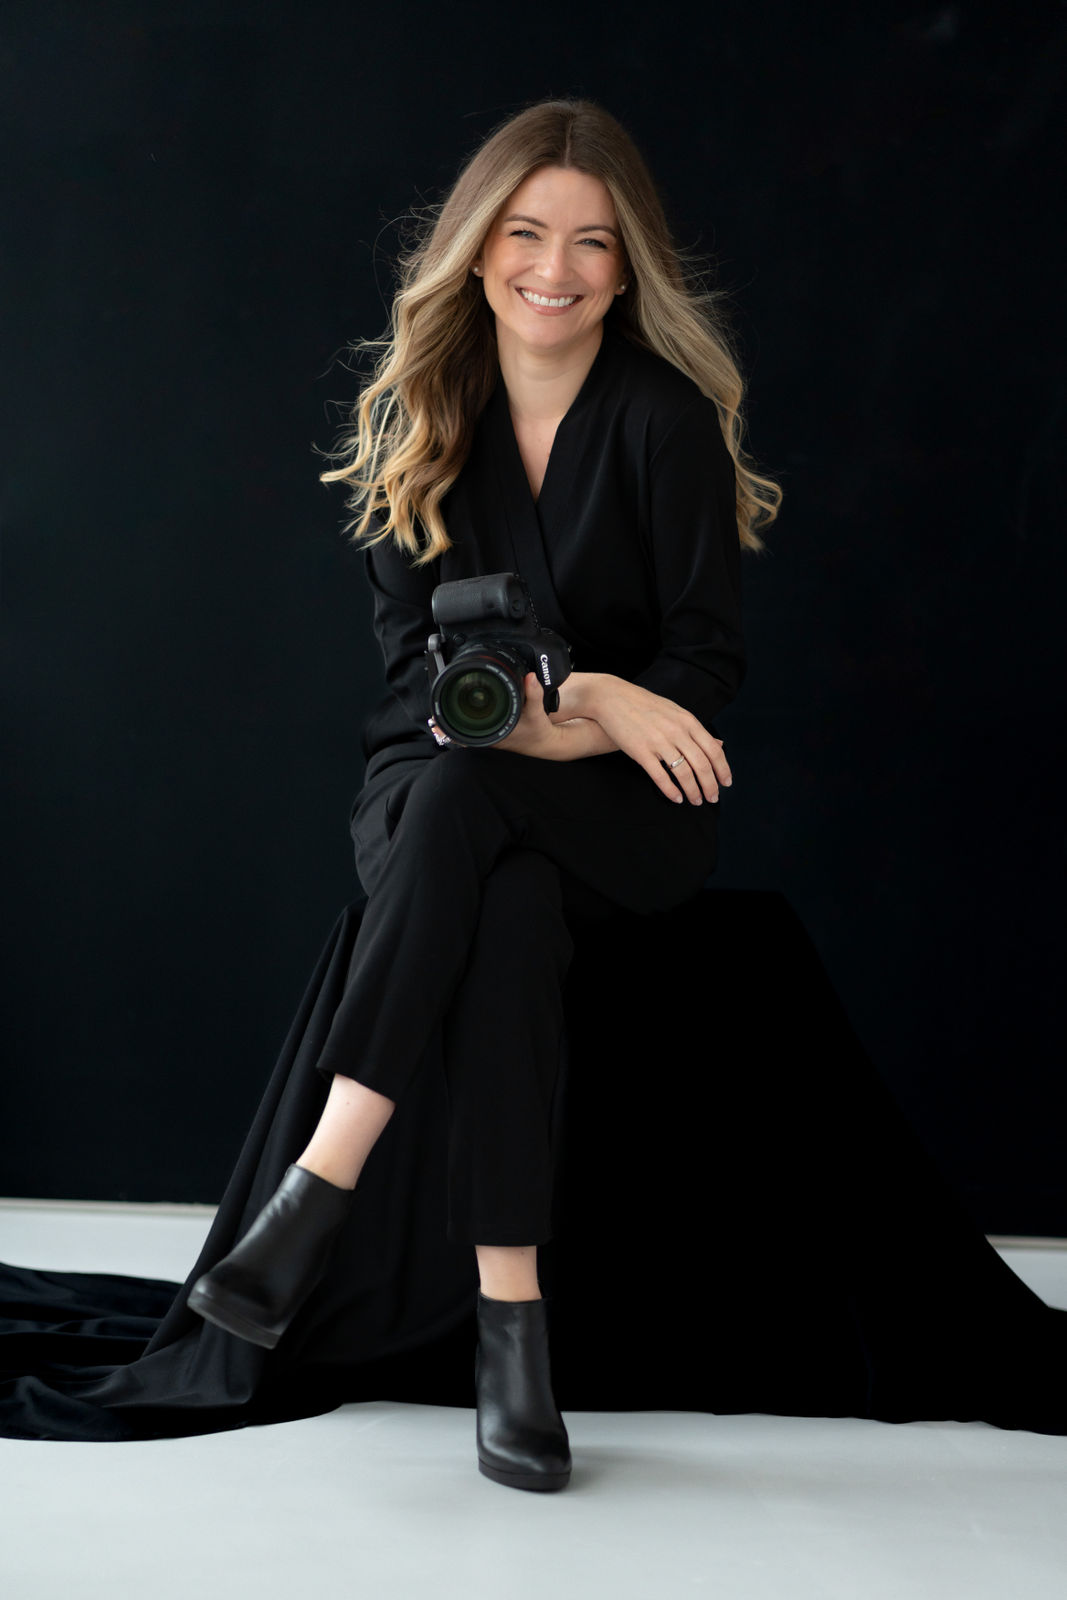 Cate Schmitt Portrait Branding Fotografin Schwangerschaftsfotografie Bamberg | Fotografin in schwarz gekleidet sitzend mit Canon DSLR Kamera im Studio